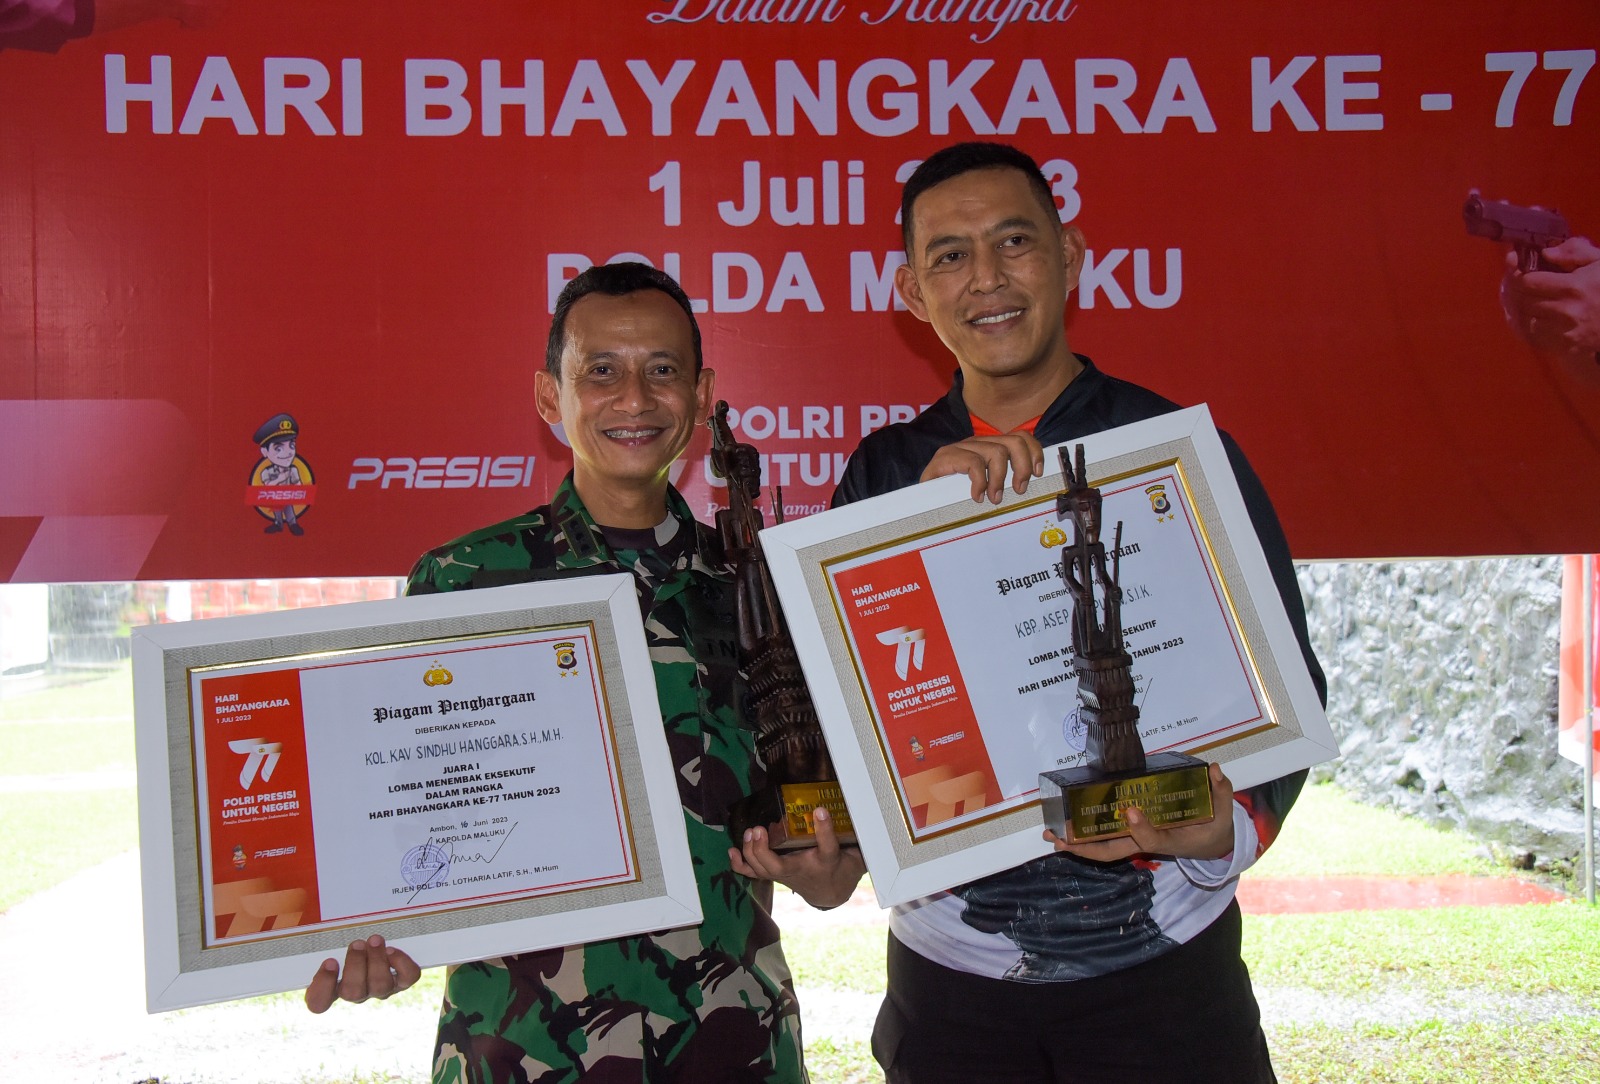 Asintel Kasdam XVI/Pattimura Juara Pertama Lomba Menembak Eksekutif Hari Bhayangkara ke 77